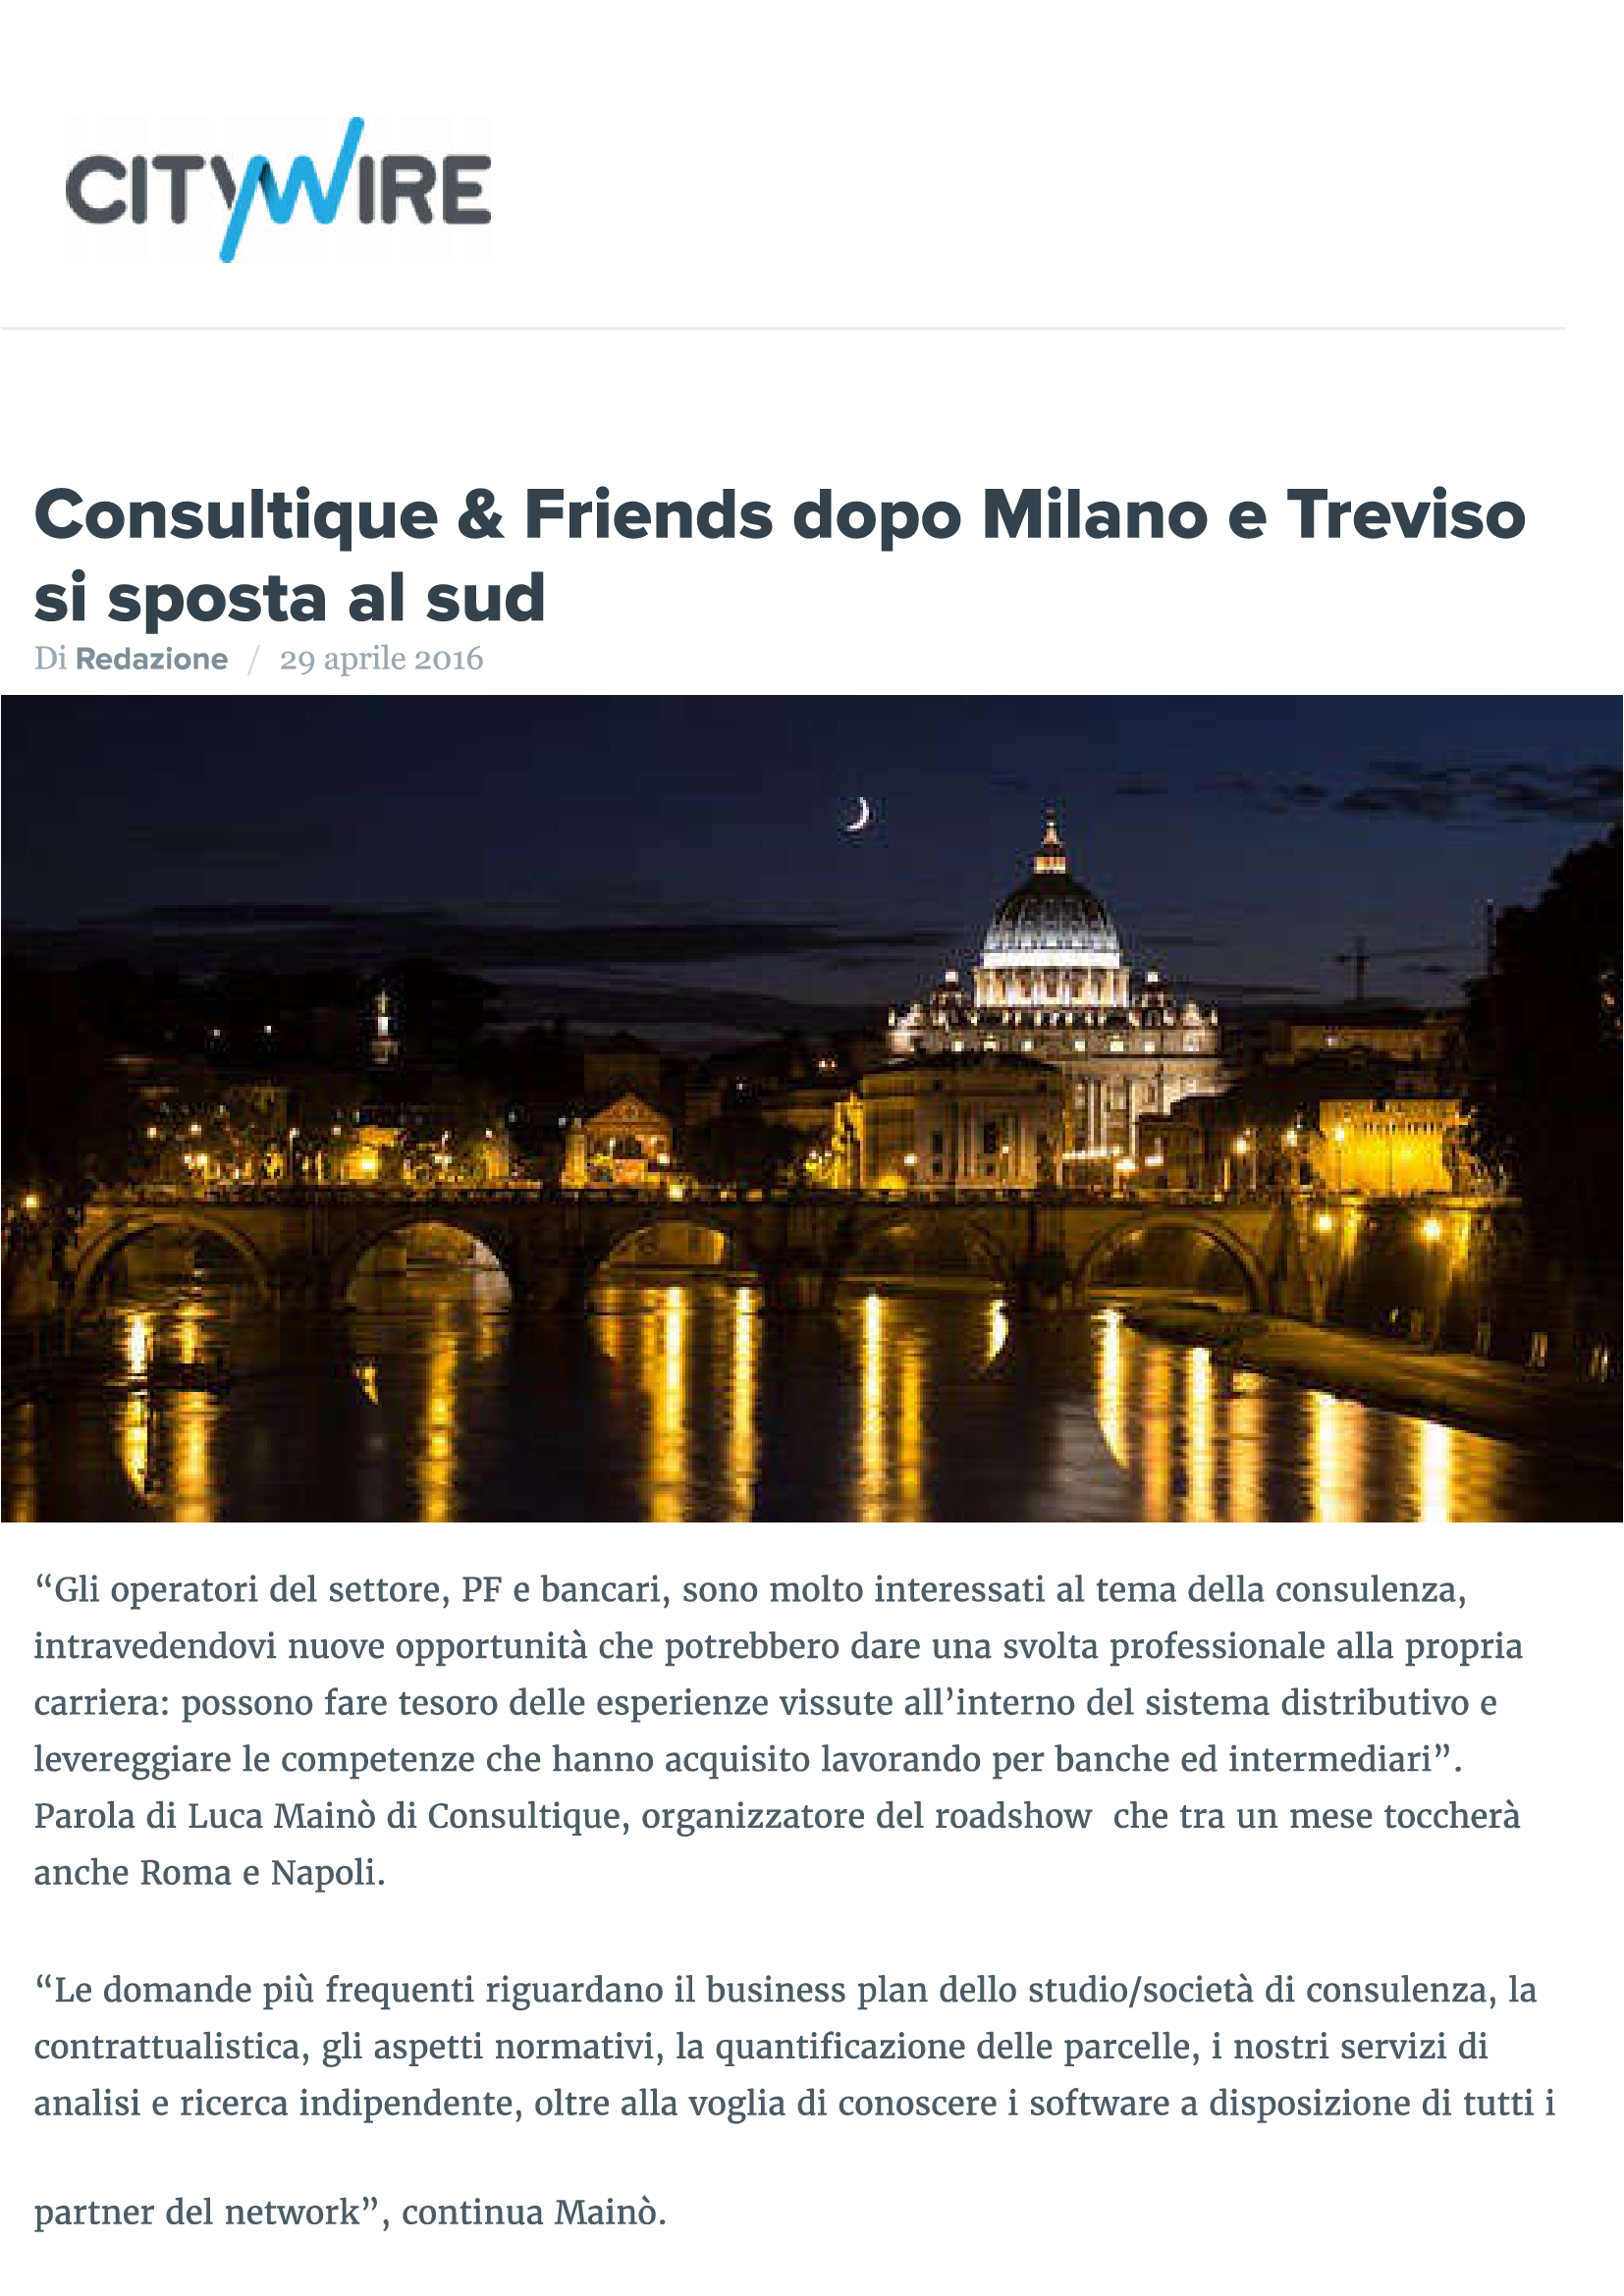 Consultique & Friends dopo Milano e Treviso si sposta al sud